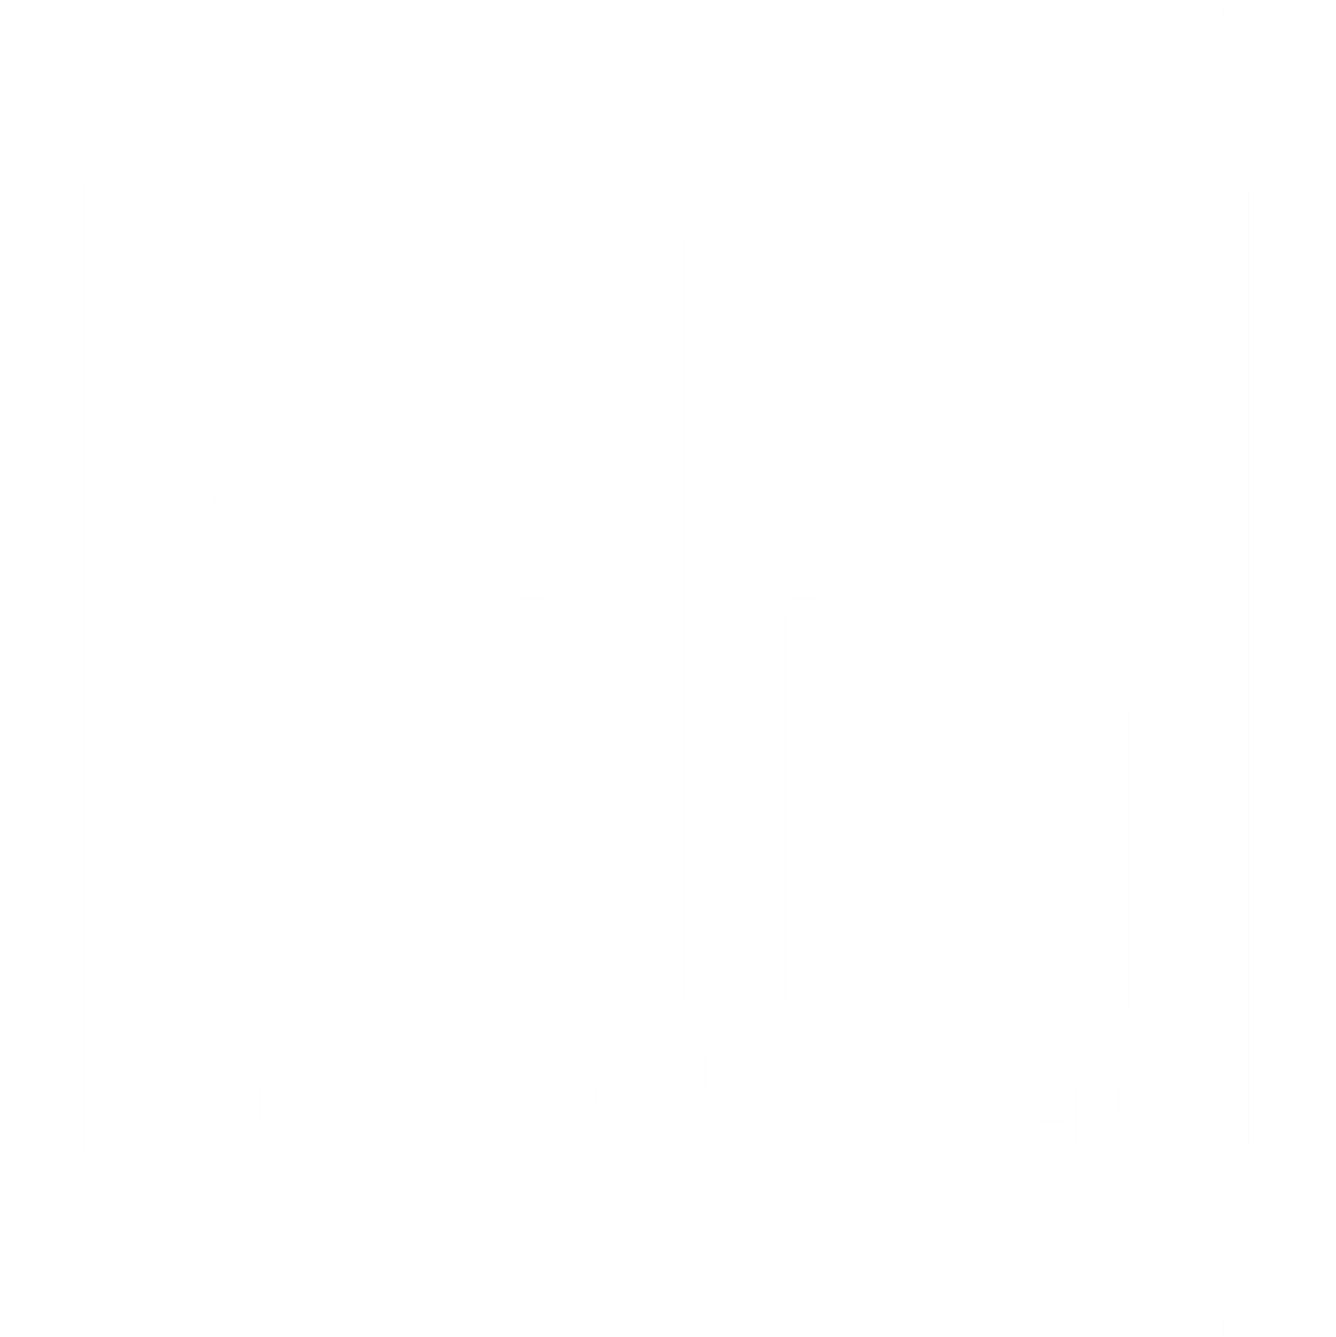 Elegant Logo Design Expert E